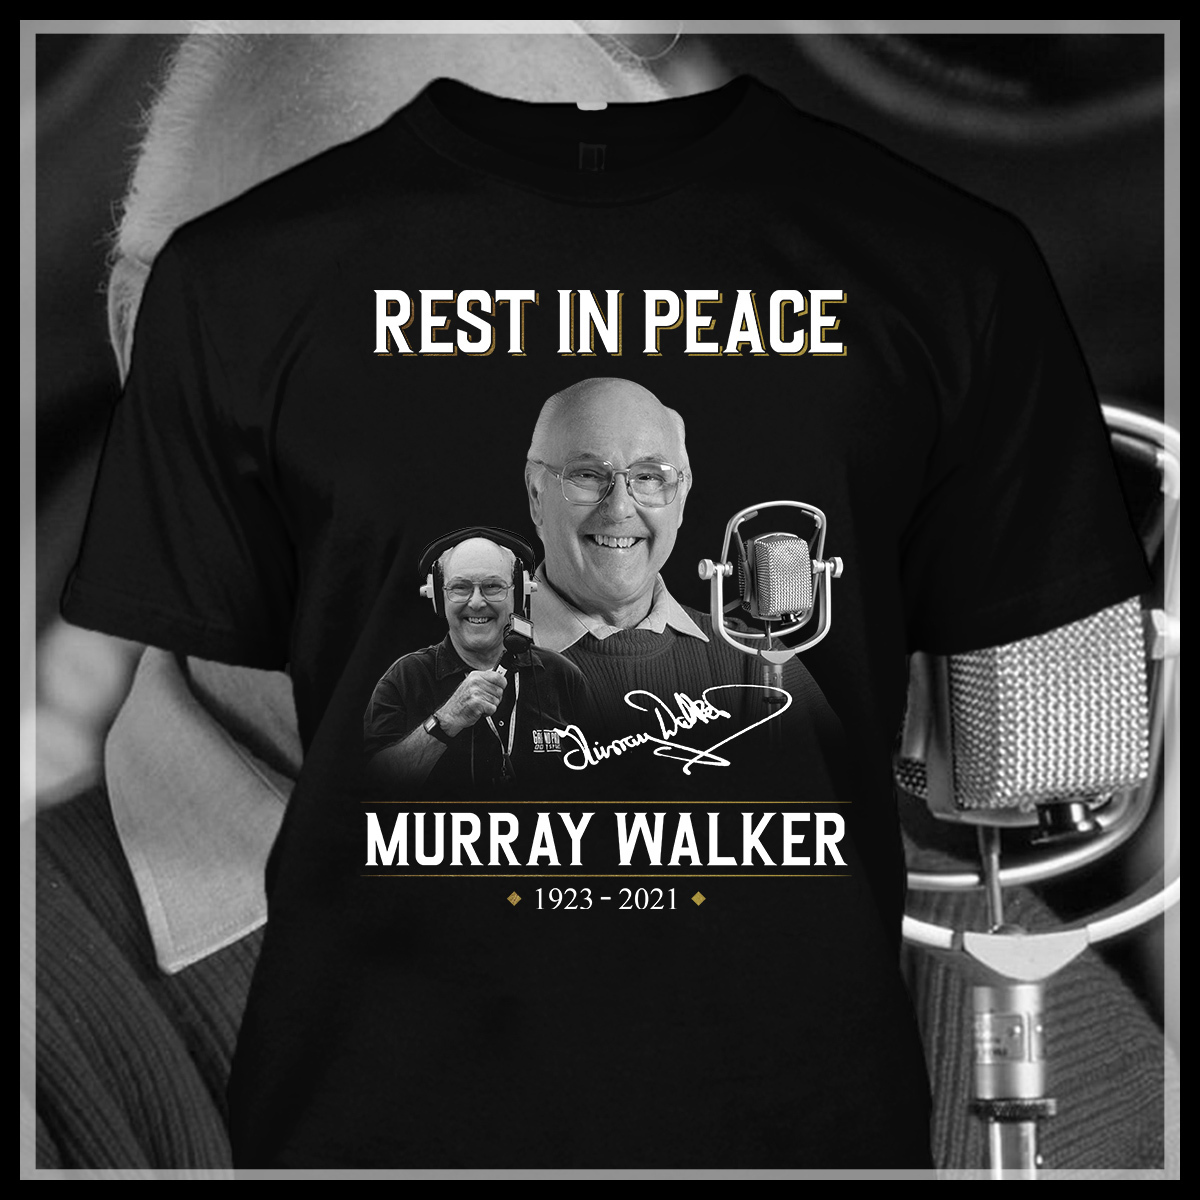 Rest in peace Murray Walker 1923 - 2021